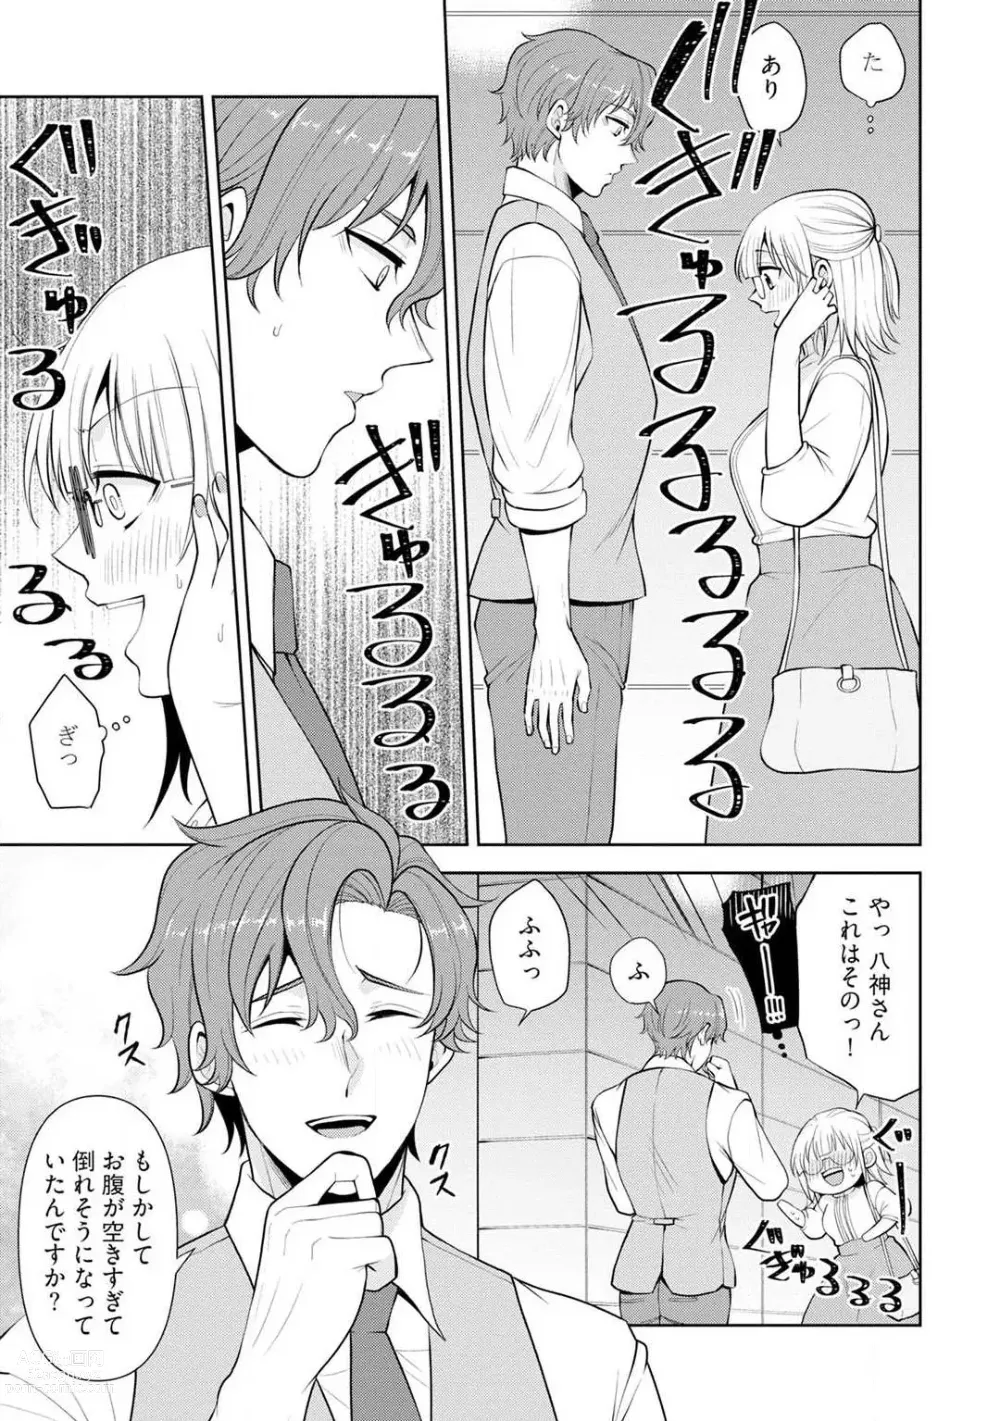 Page 10 of manga Ippai Kudasai, Yagami-san 〜 Karada no Aishō Batsugun! Akogare Jōshi ni Maiban Aisa Retemasu 〜 1-4